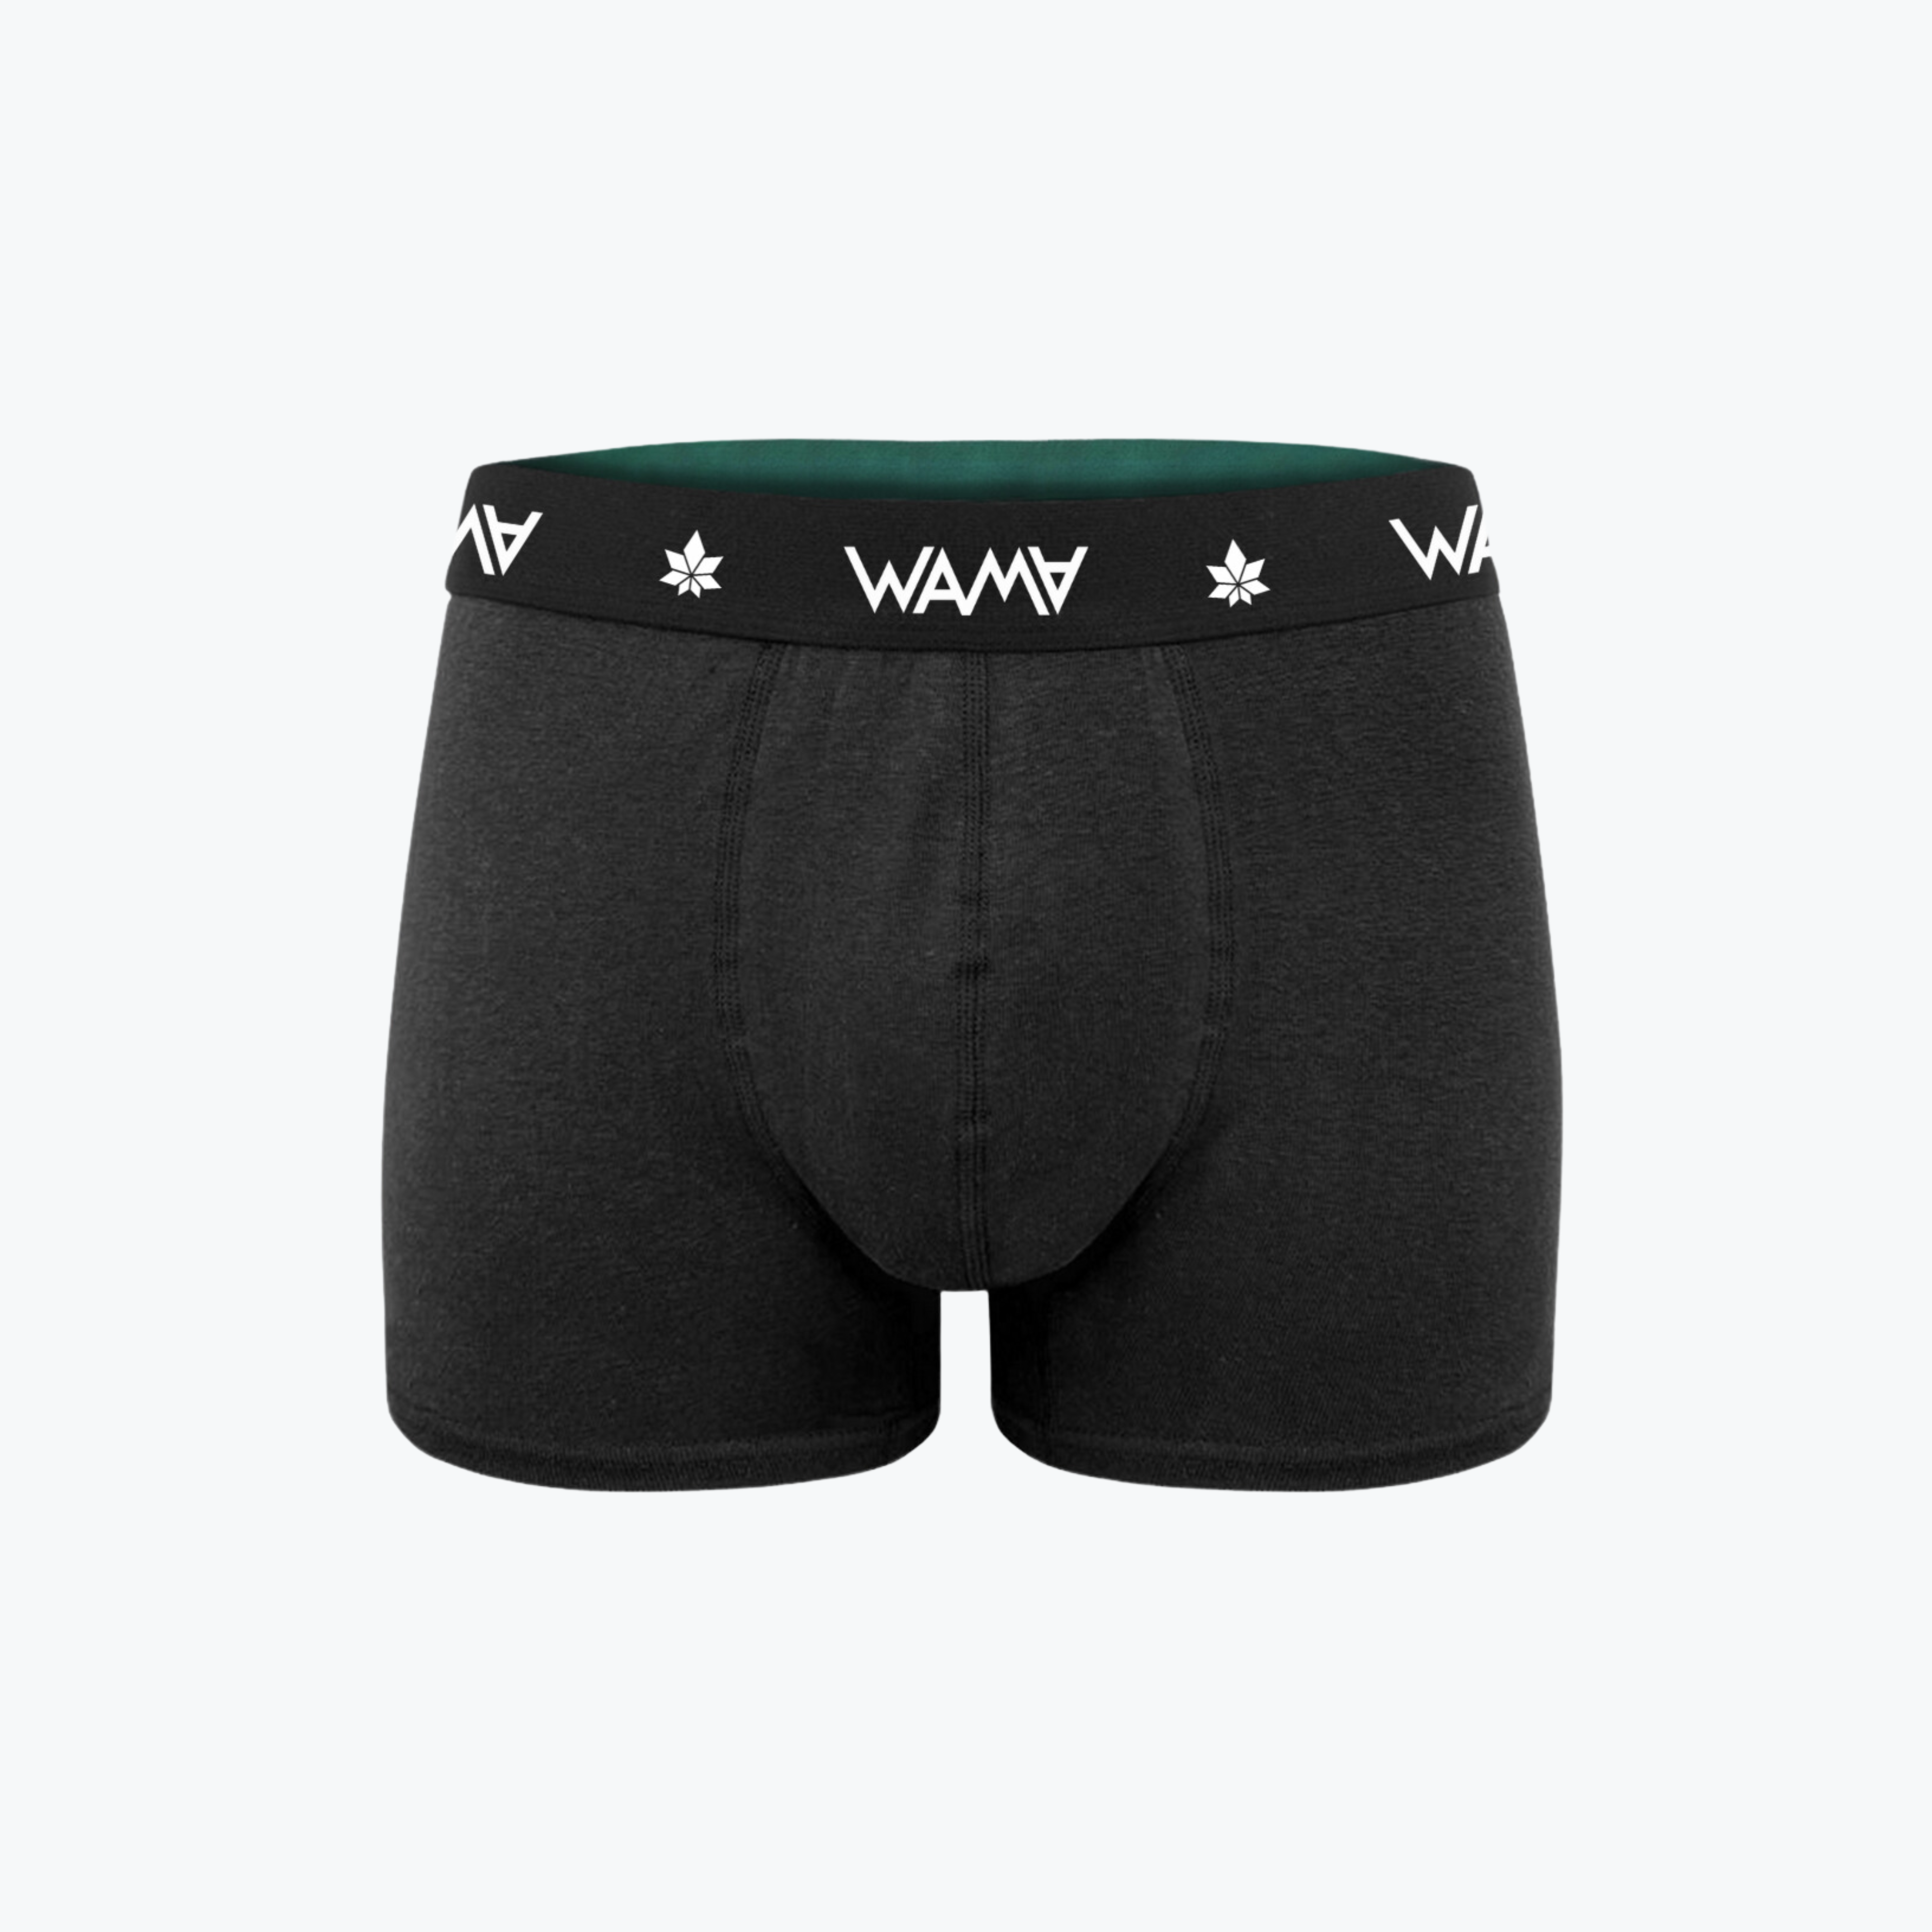 Buy WAMA Underwear Online - Hemp Store